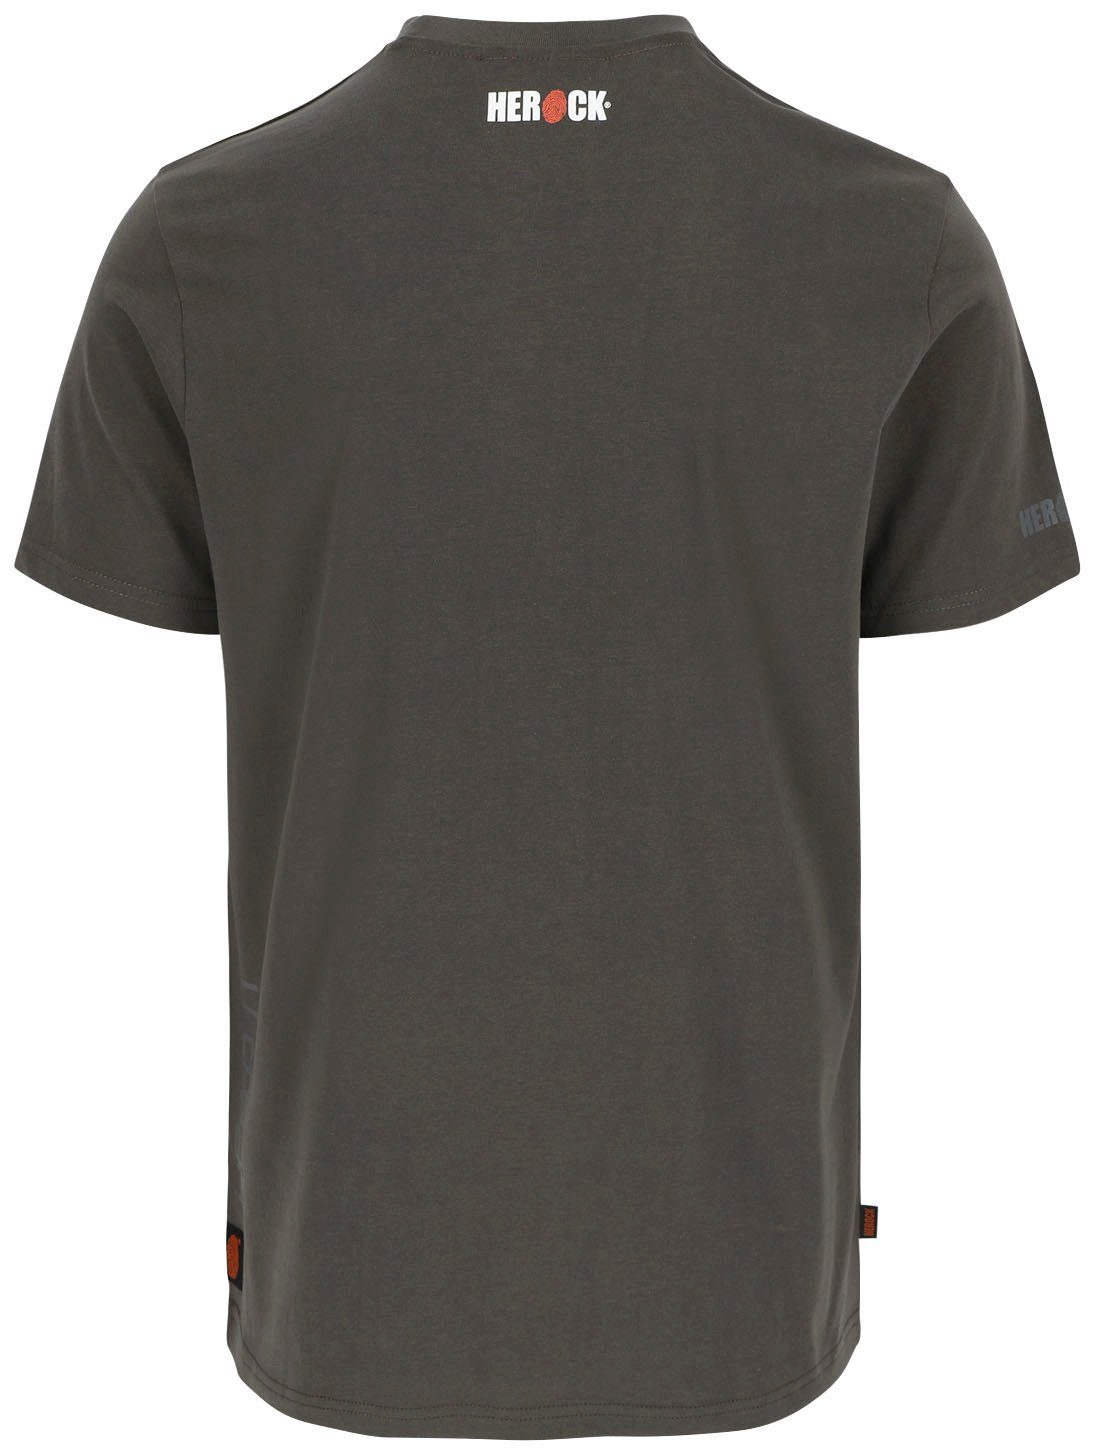 T-Shirt T-Shirt Callius kurze Ärmel Herock Herock®-Aufdruck, kurze Rippstrickkragen Ärmel, grau Rundhalsausschnitt,